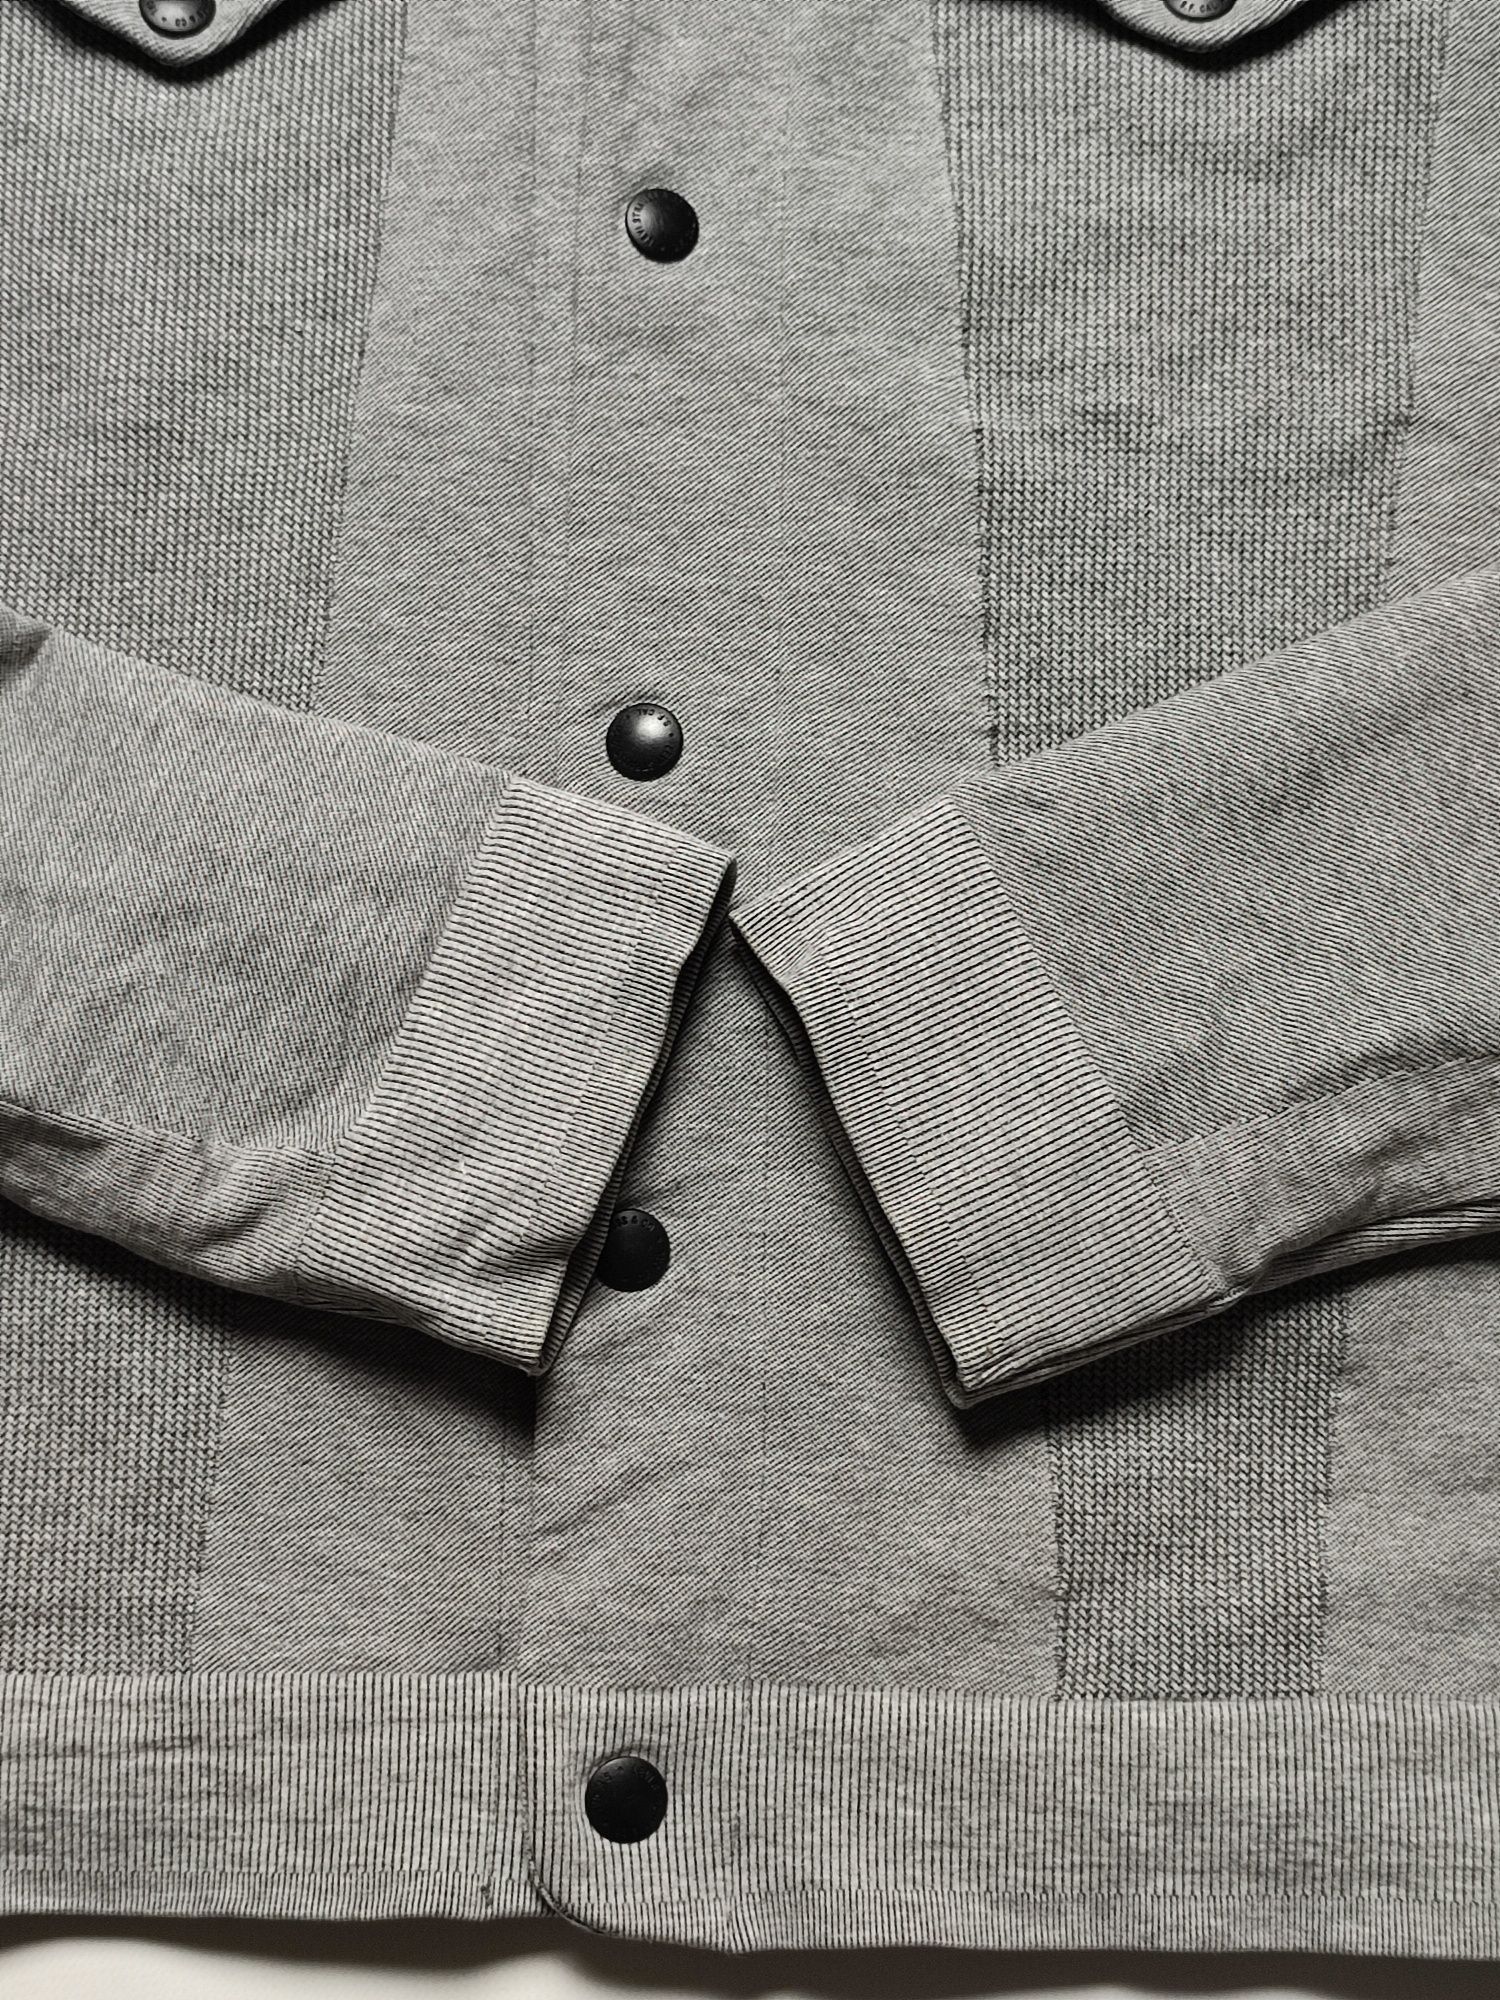 Куртка трикотажная кофта Levi's EUR M-L (р.48) бу ориг мужская джинсов